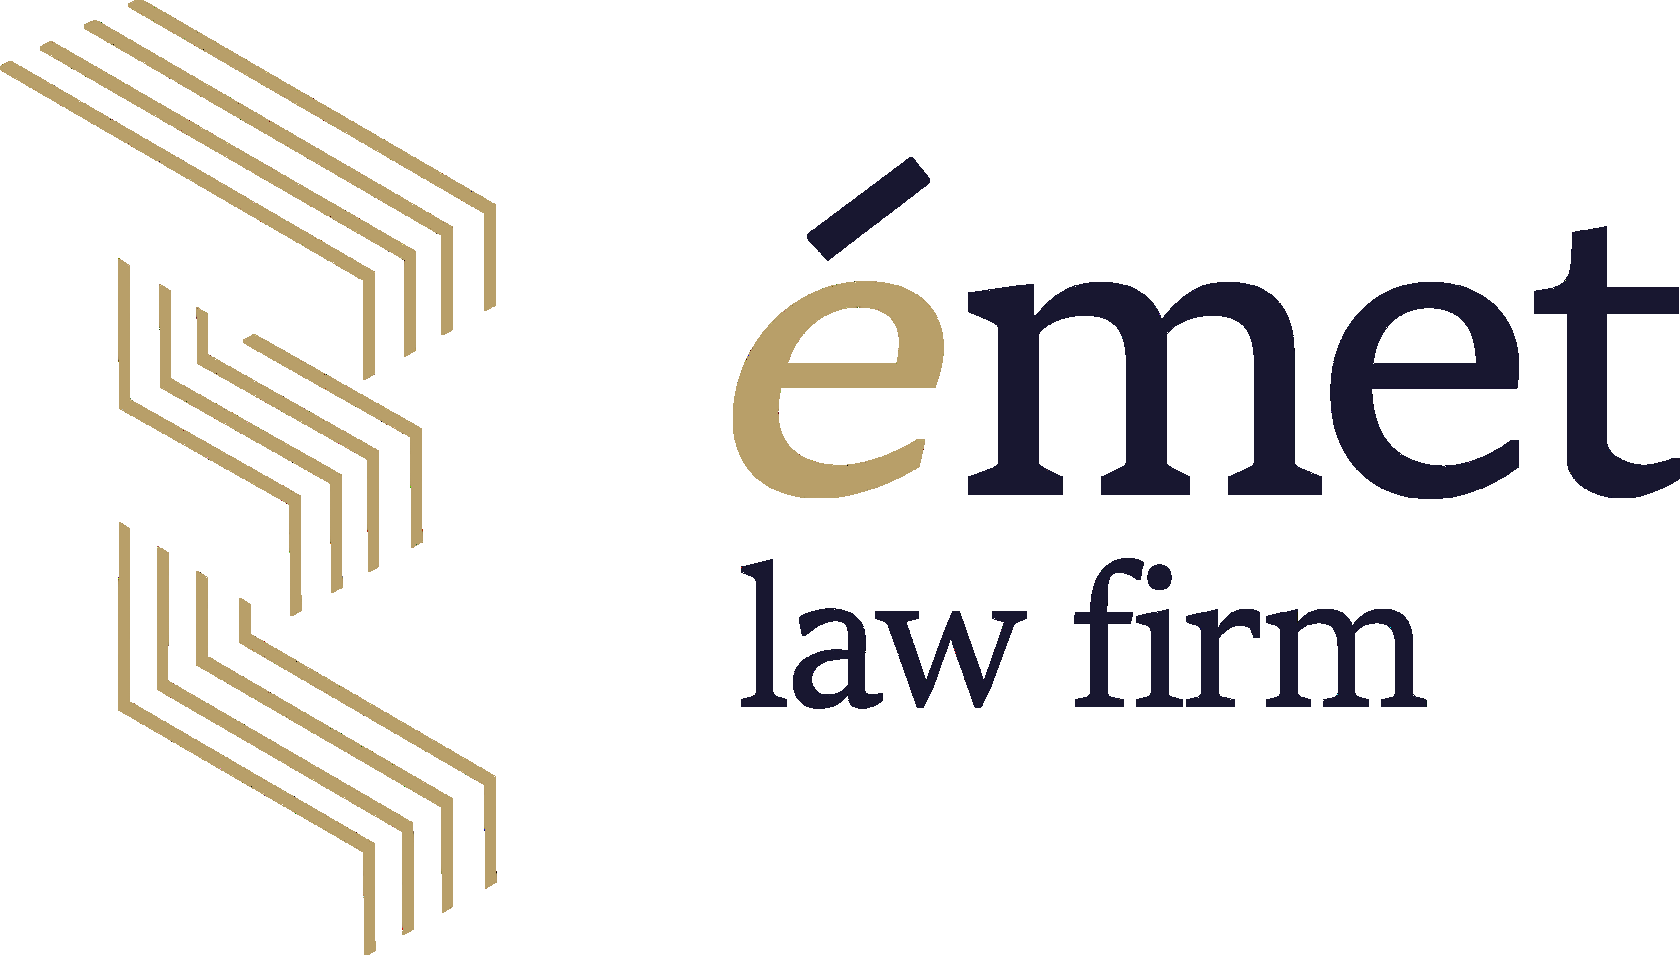 Emet Law Firm